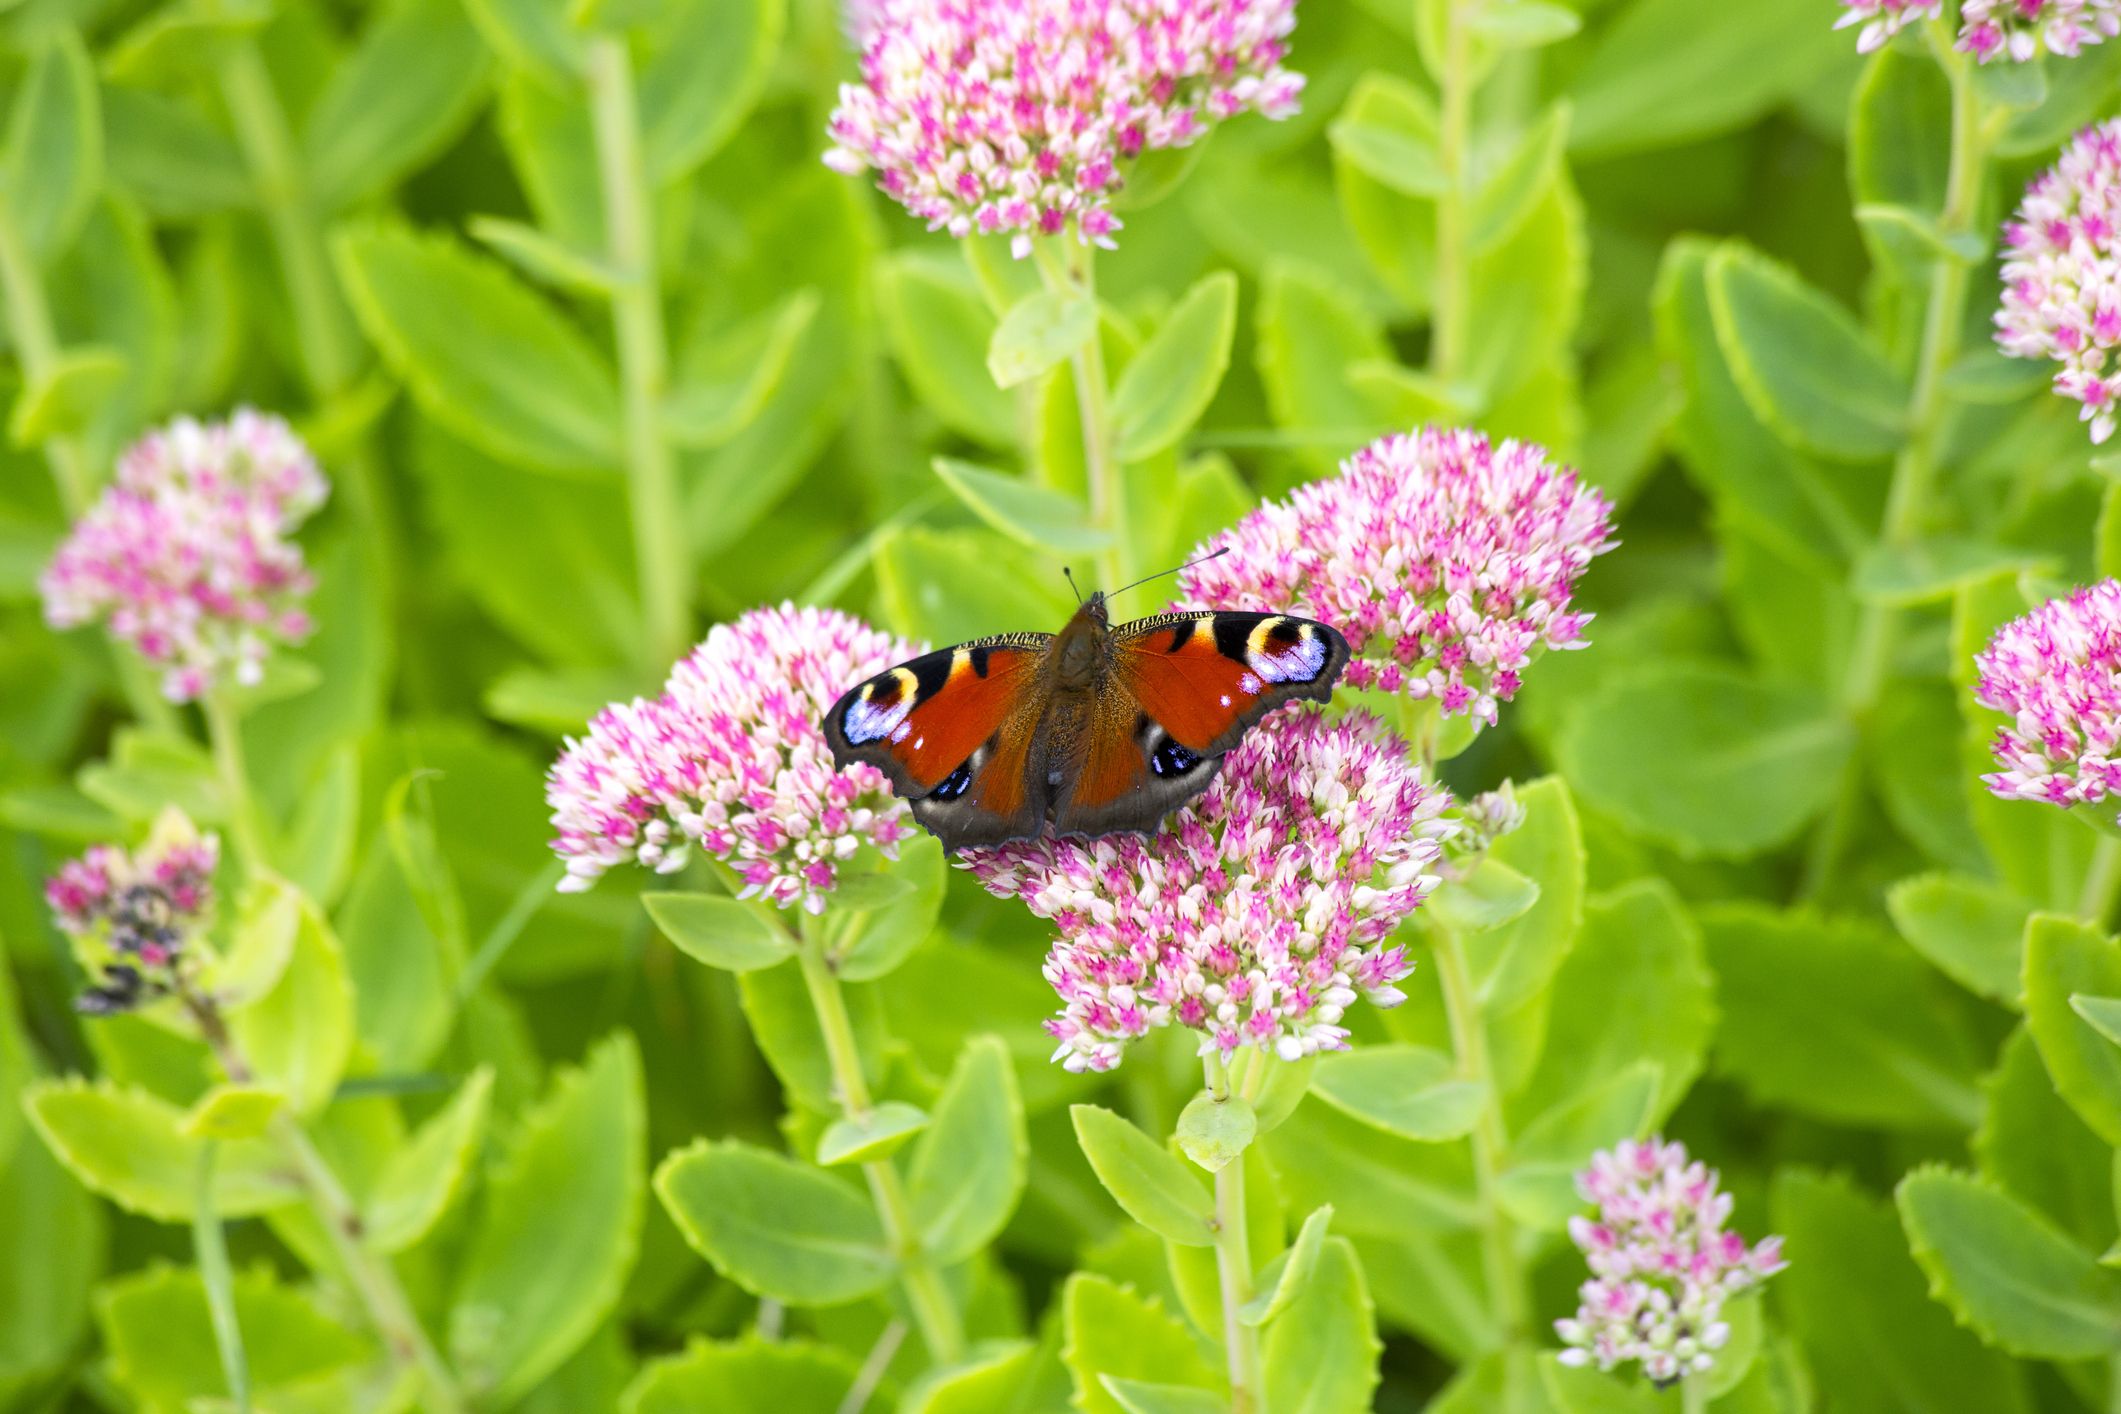 Download 29 Flowers That Attract Butterflies Garden Plants That Attract Pollinators